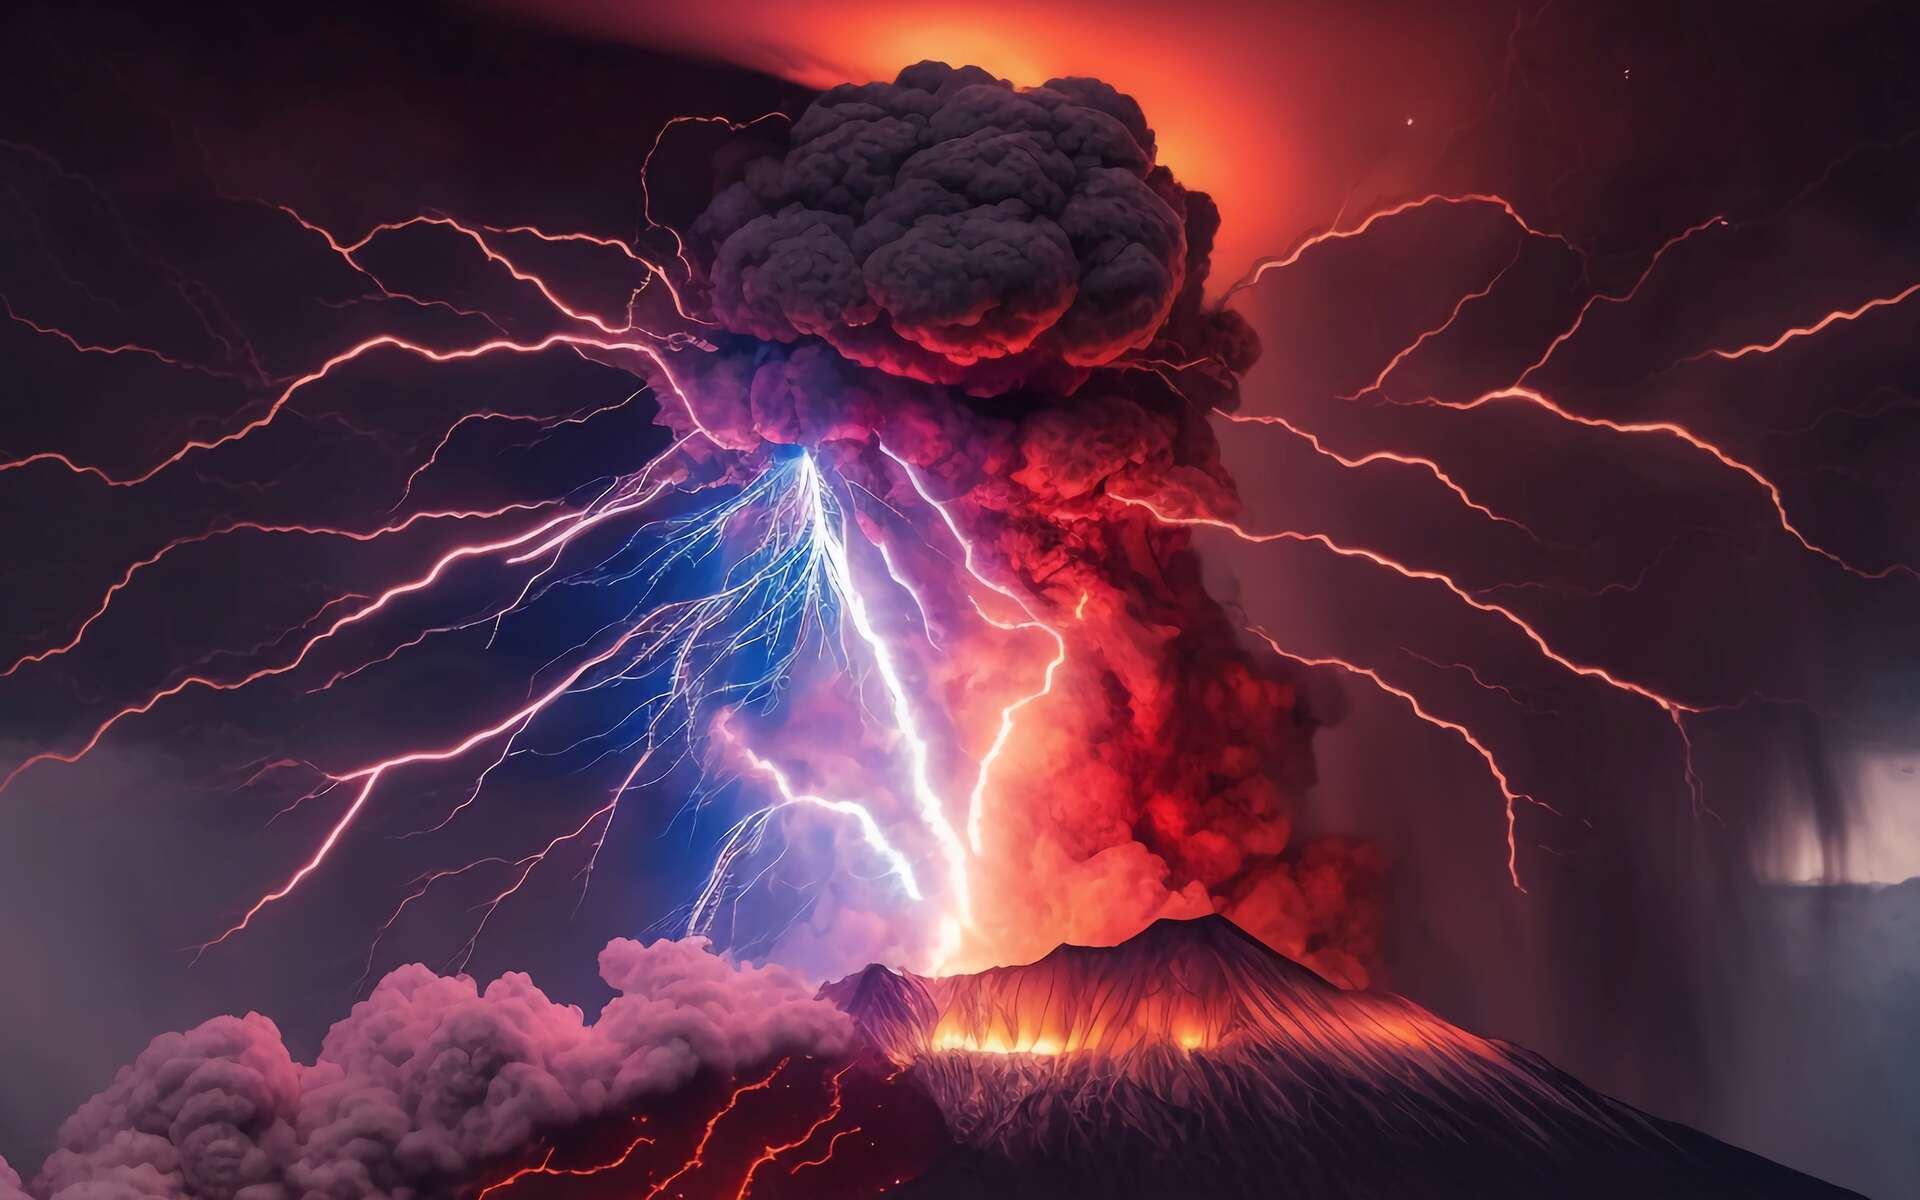 Ce volcan bat tous les records avec plus de 2 600 éclairs par minute durant son éruption explosive !